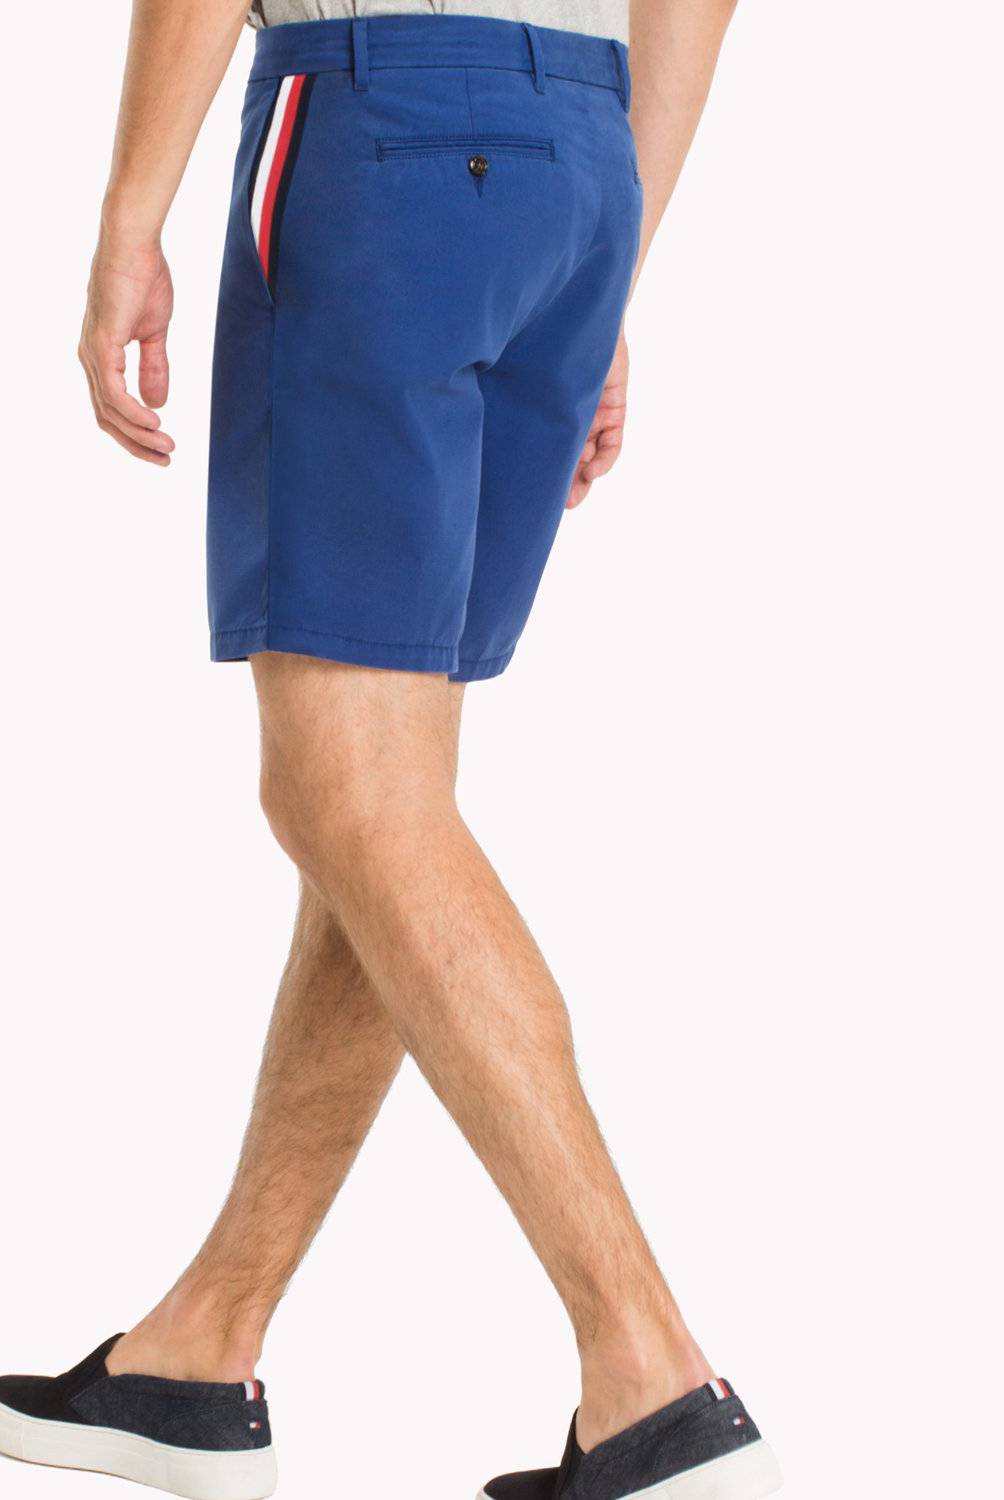 TOMMY HILFIGER - Shorts con Cinta Distintiva y Corte Regular